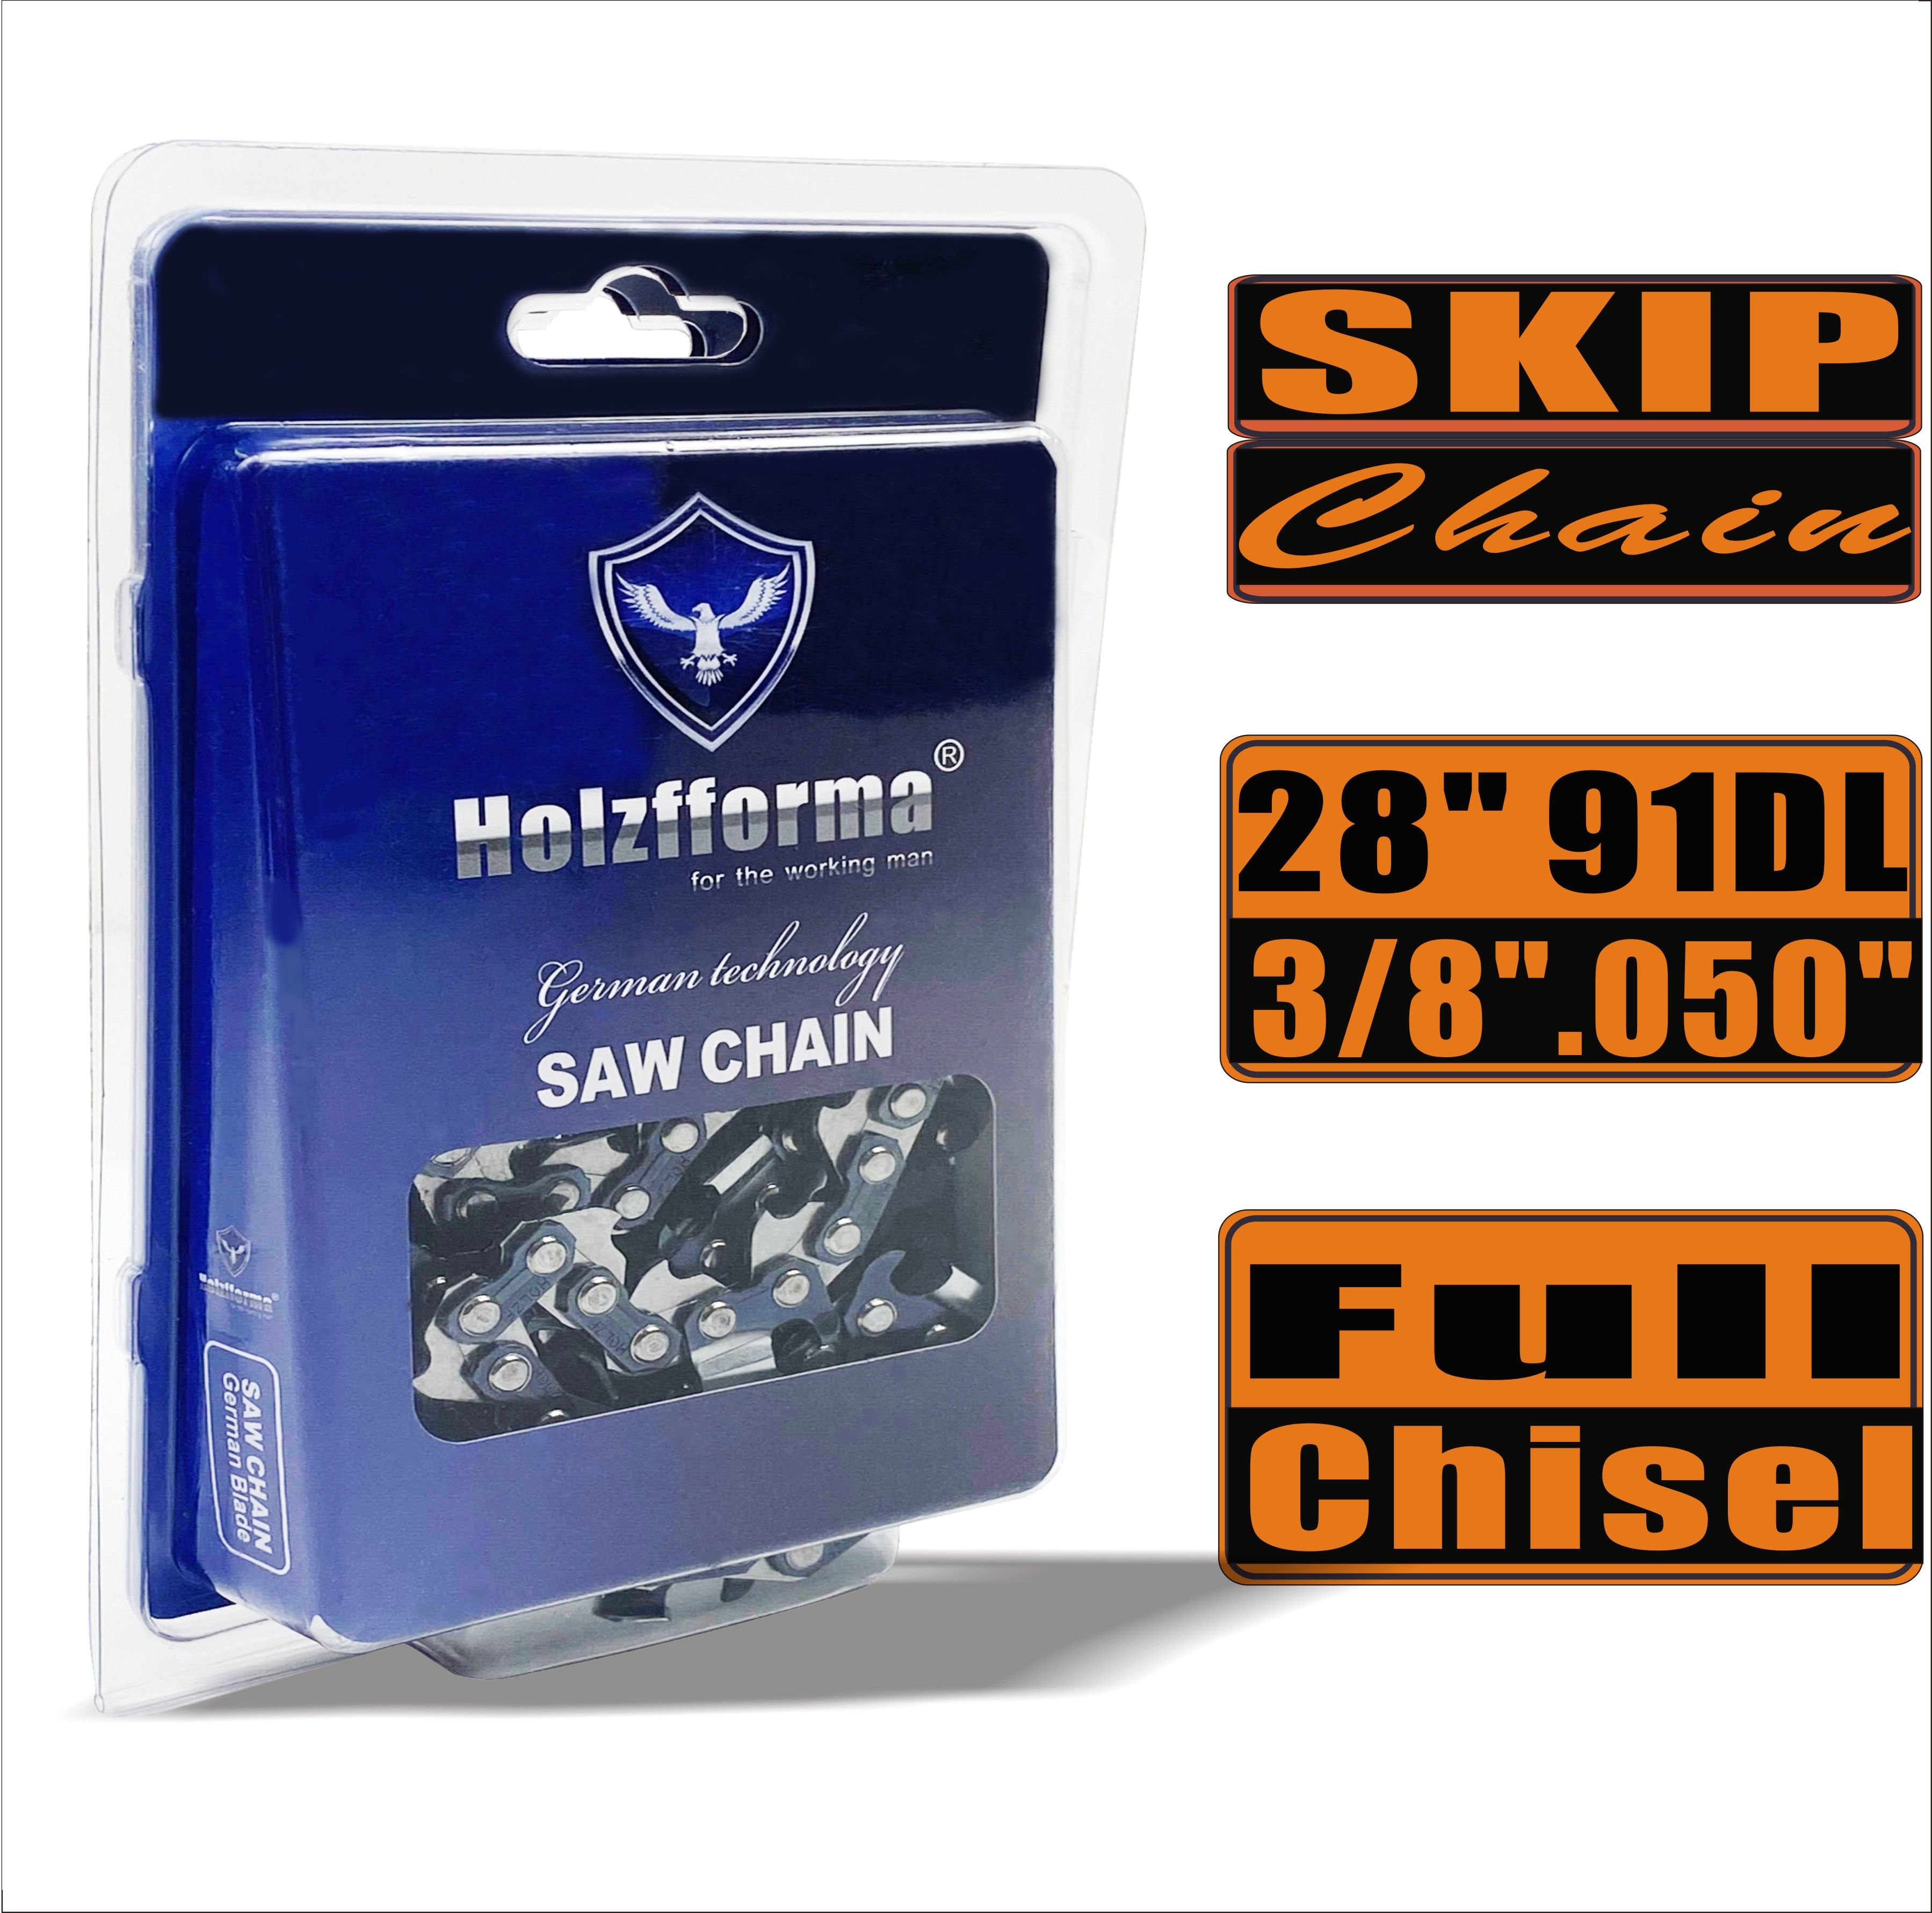 Holzfforma® Skip Chain Full Chisel 3/8'' 0,050'' 28 дюймов 91DL цепи для Бензопилы Высококачественные немецкие лезвия и звенья